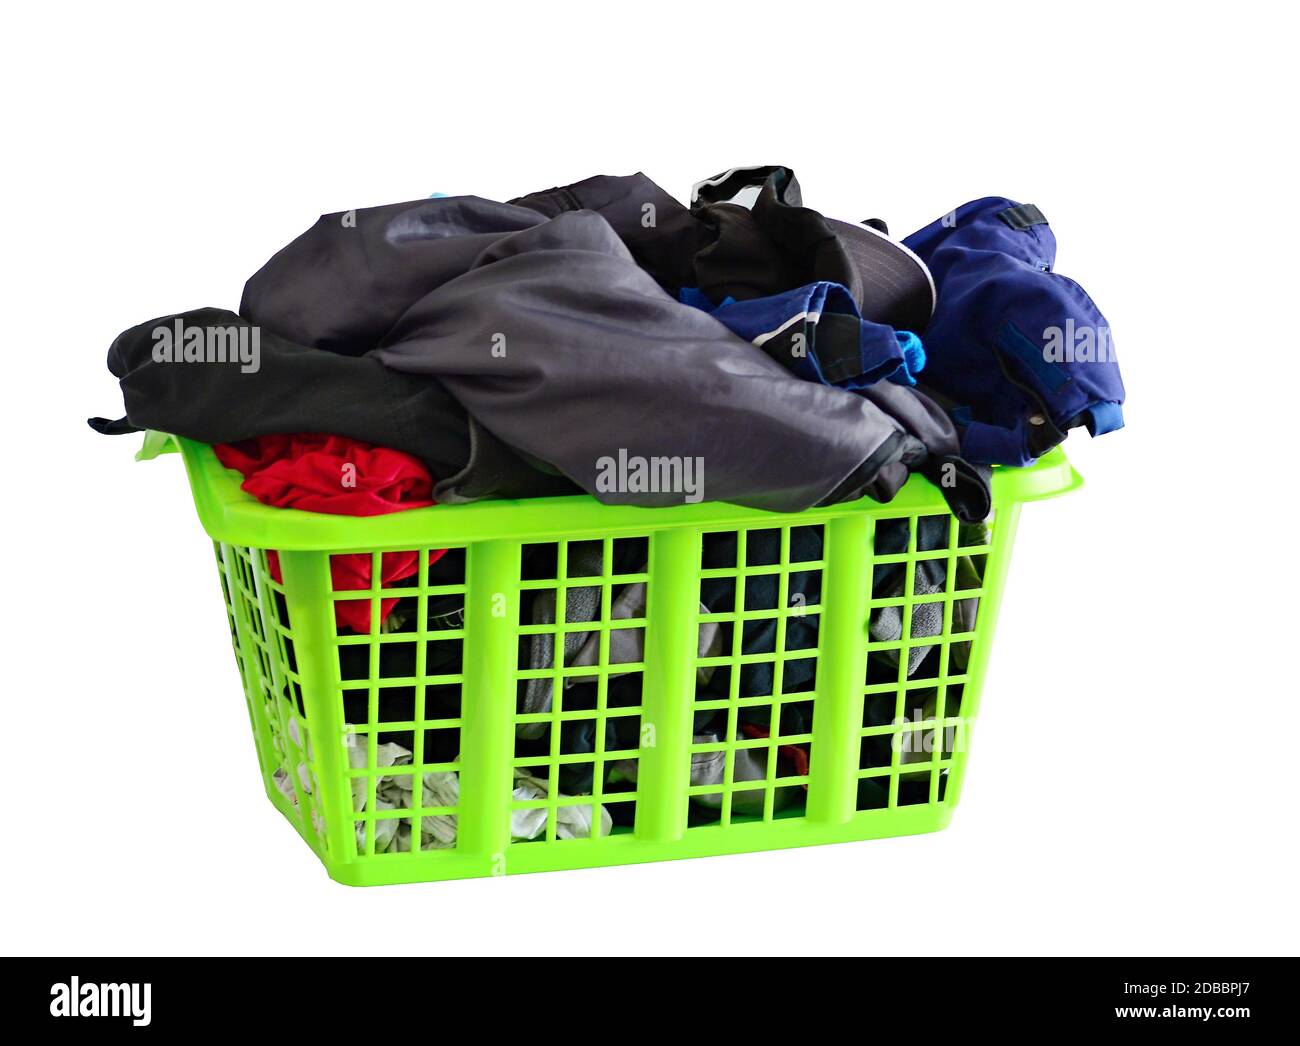 Green basket full of fresh washed laundry isolated on white background. Stock Photo